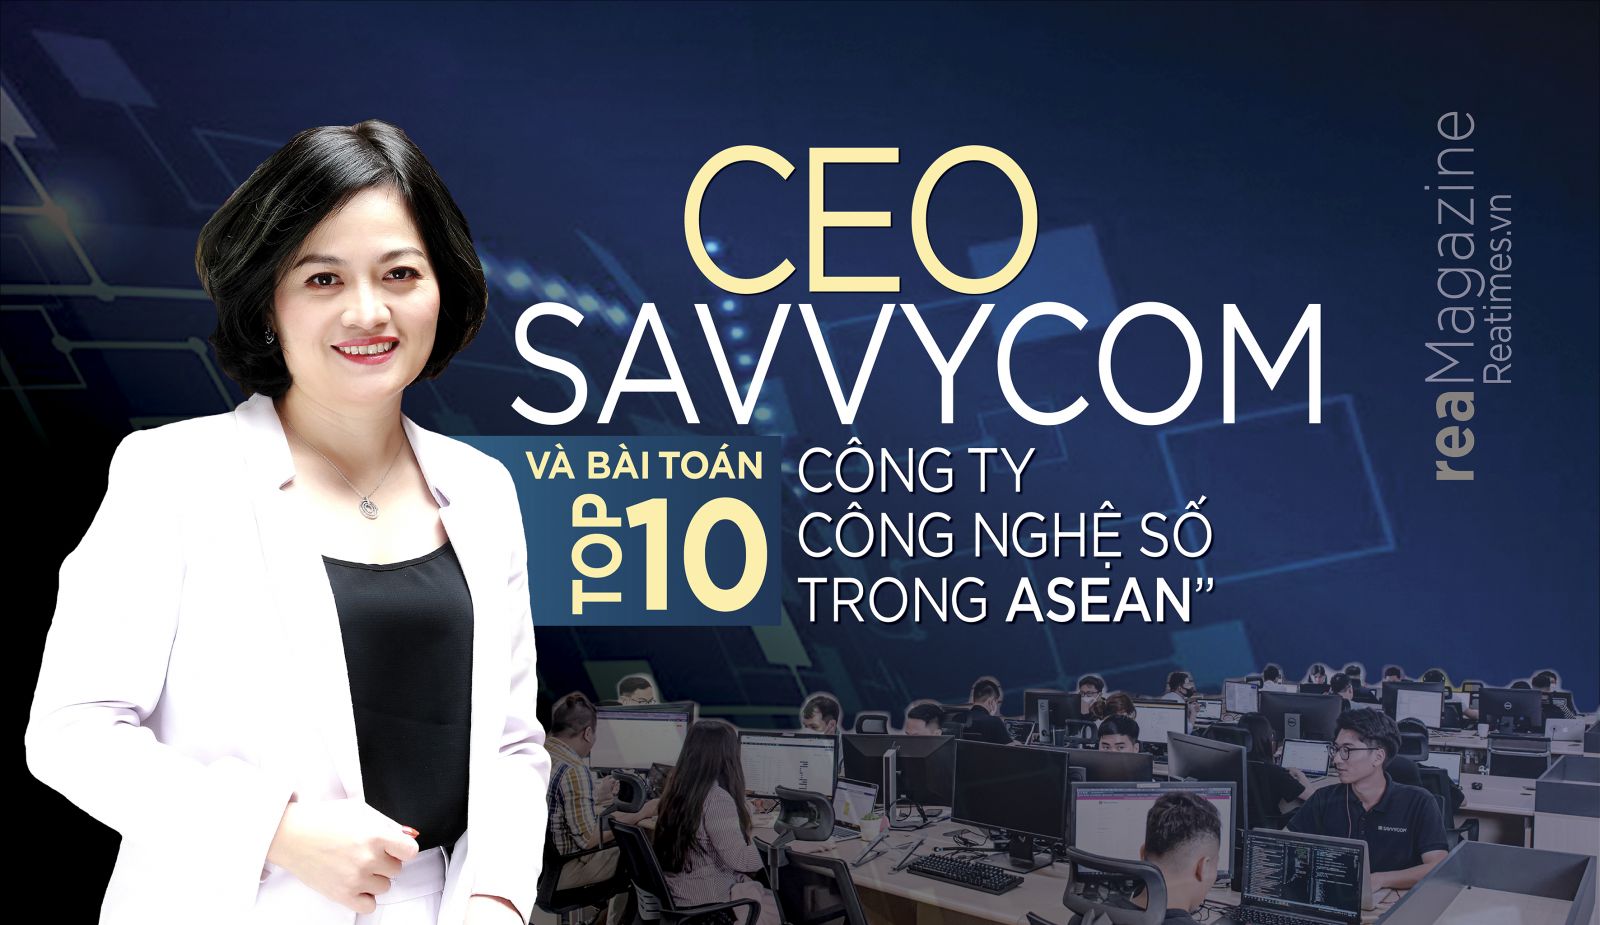 CEO SAVVYCOM và bài toán “Top 10 công ty công nghệ số trong ASEAN”